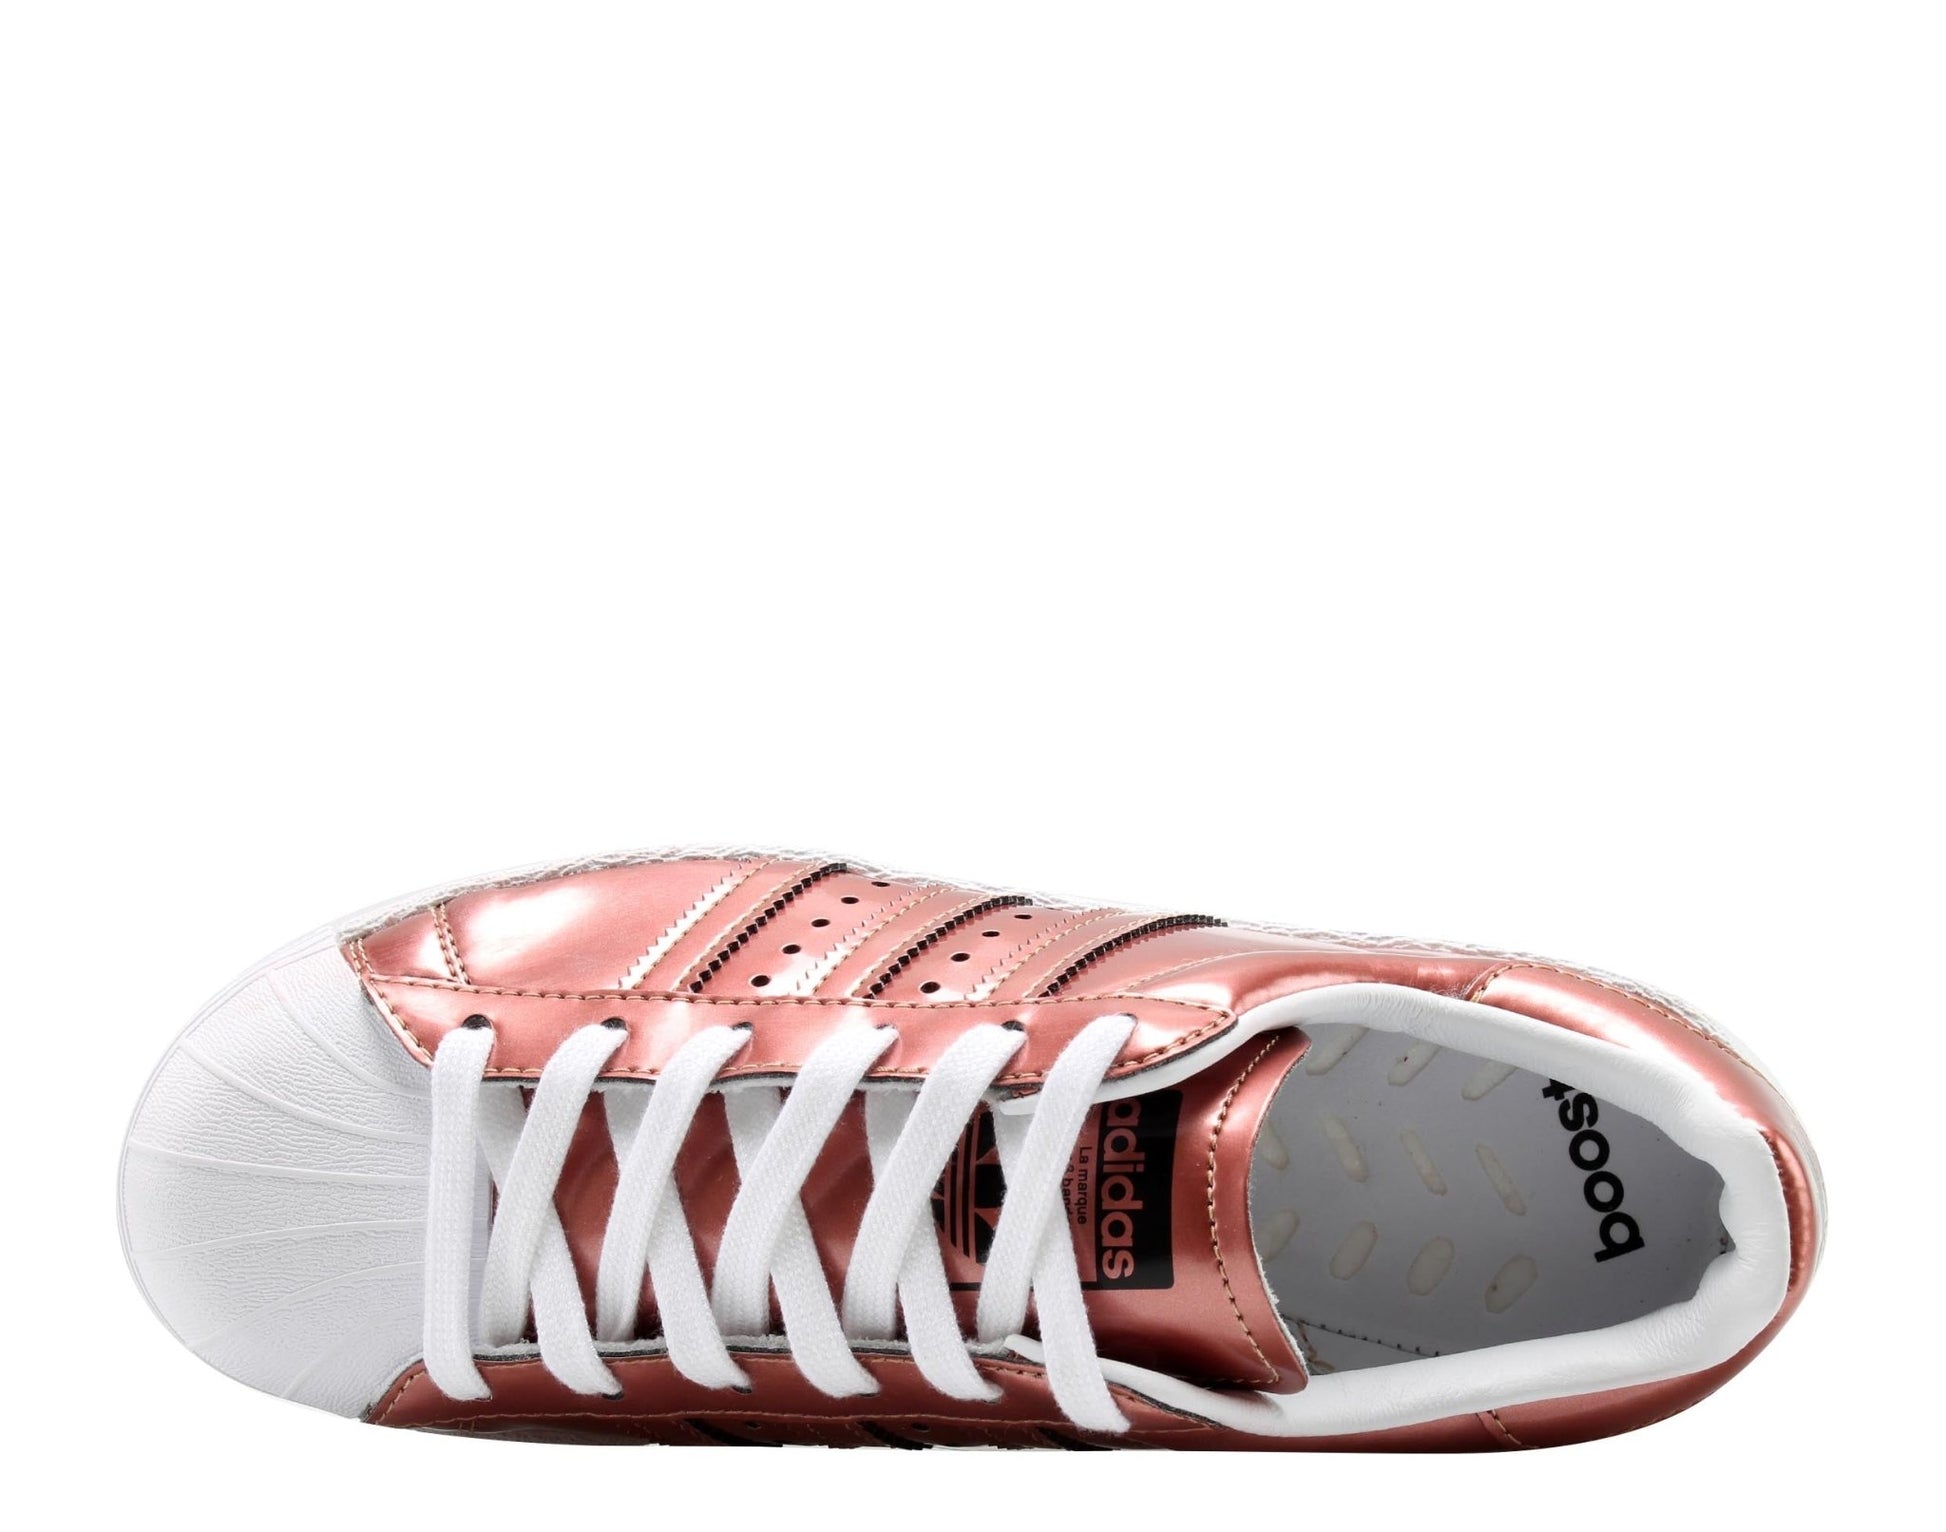 Adidas Superstar Boost Copper Metallic Women's Basketball Shoes BB2270 - Becauze